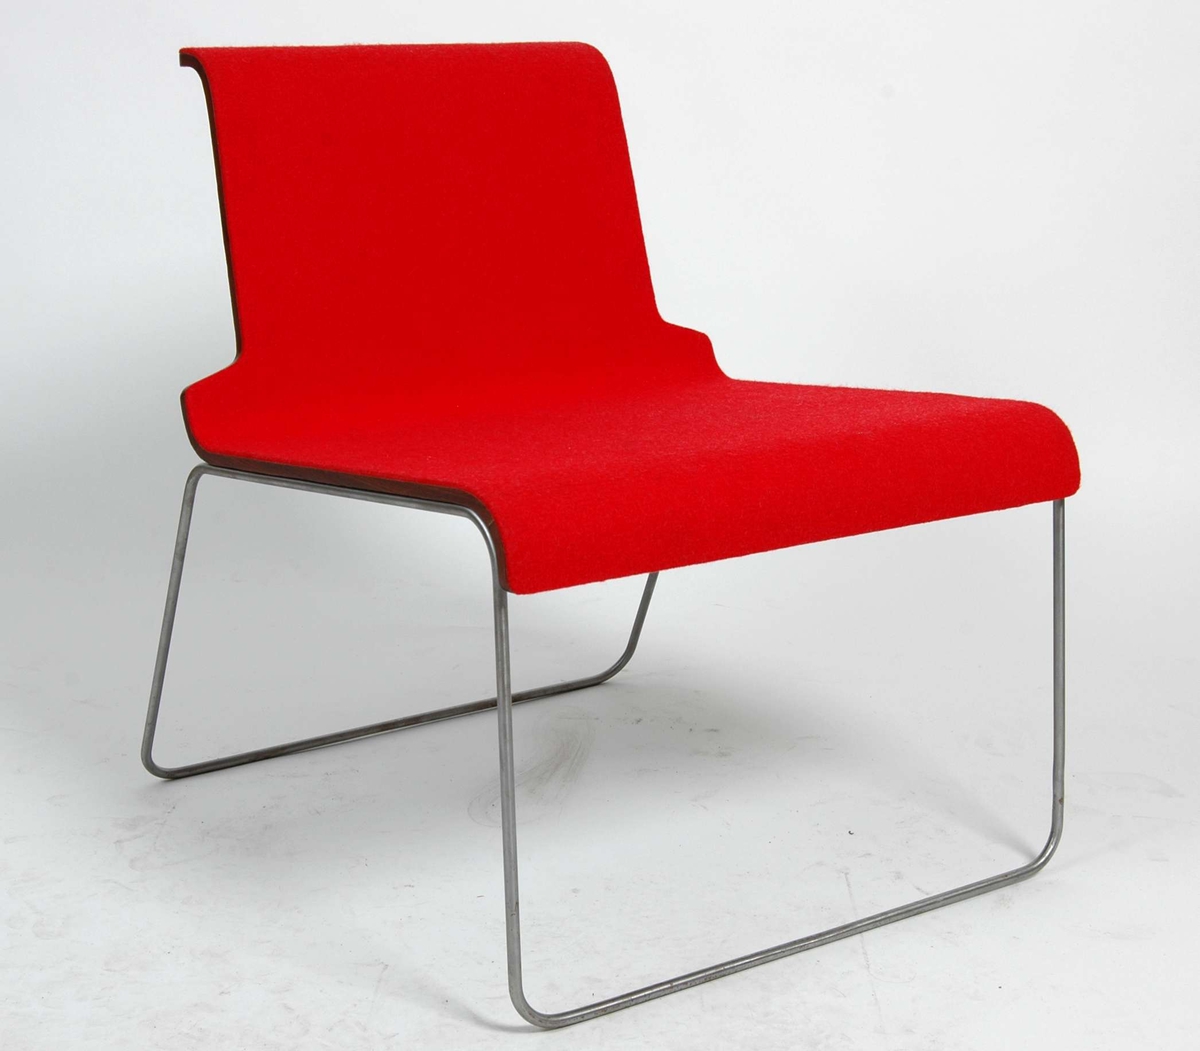 " En lav stol i palisanderfiner og rød filt, muligens en blanding av ull og mikrofiber, understell av stålbolt ".